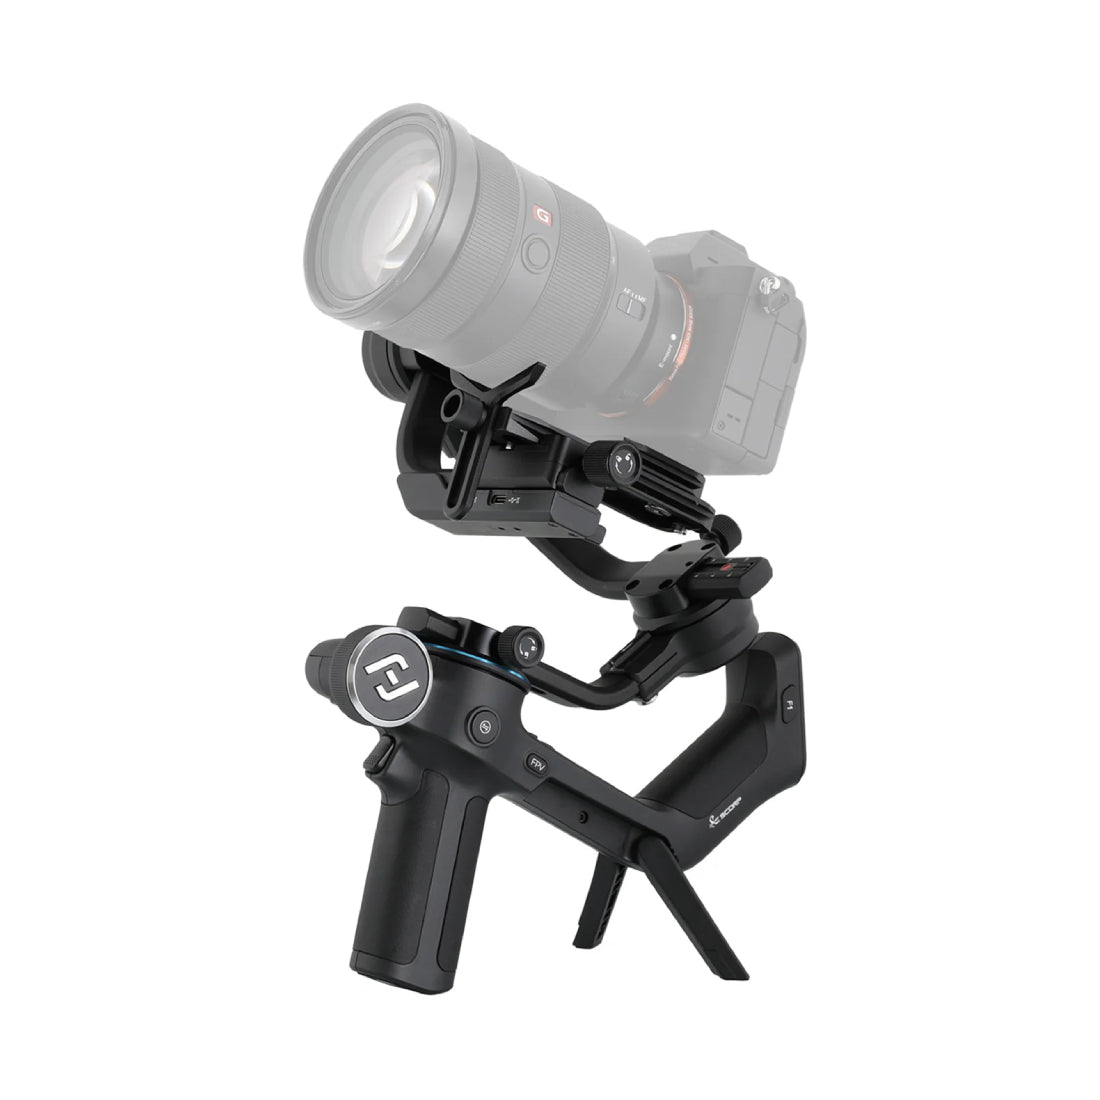 Feiyu SCORP-C, 3 Axis Handheld Gimbal for Mirrorless Camera - حامل كاميرا - Store 974 | ستور ٩٧٤